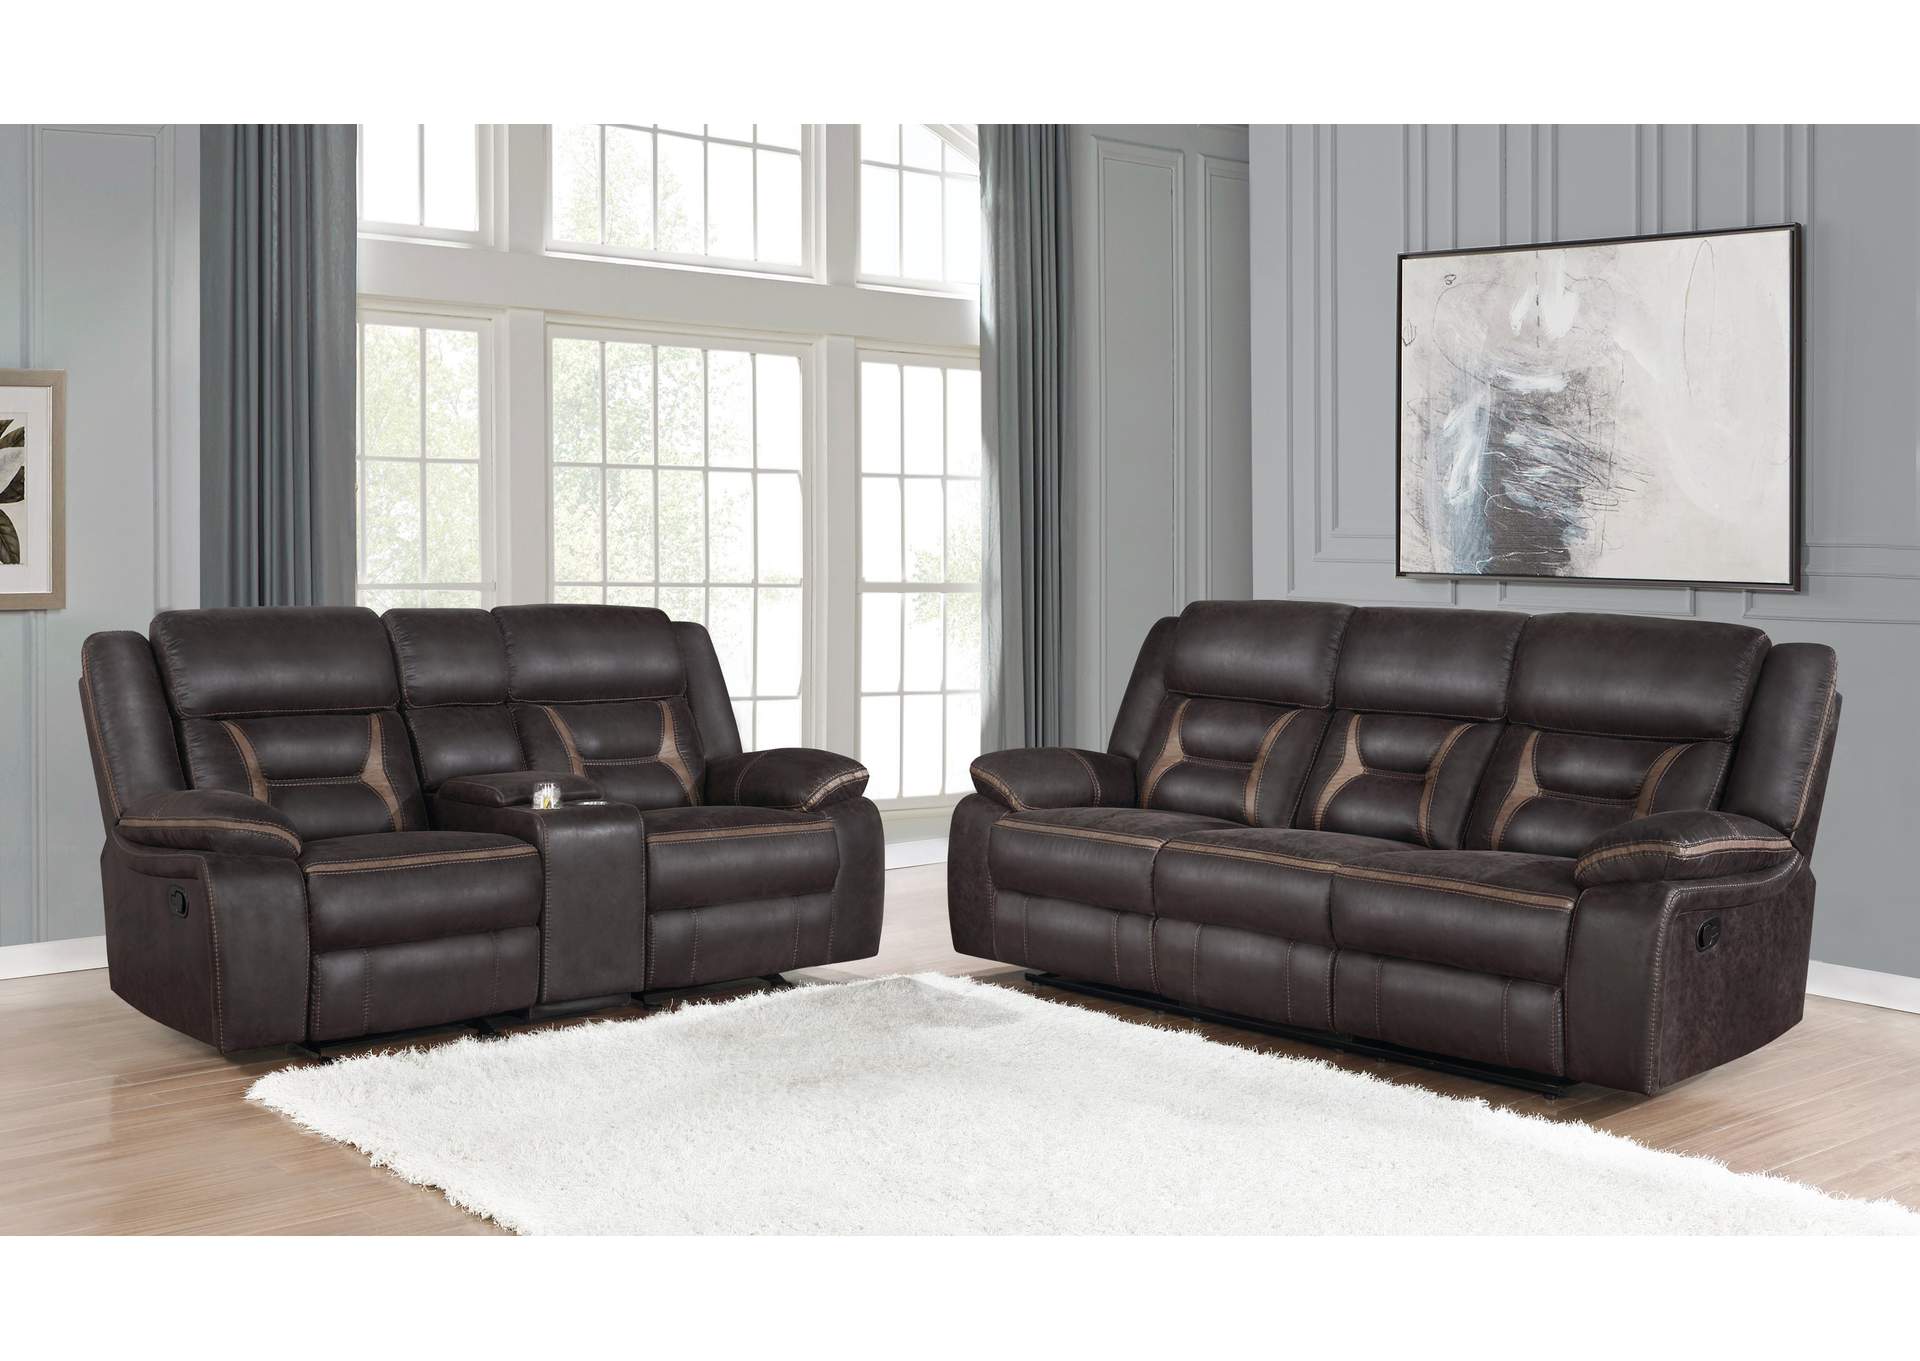 Greer Upholstered Tufted Living Room Set,Coaster Furniture